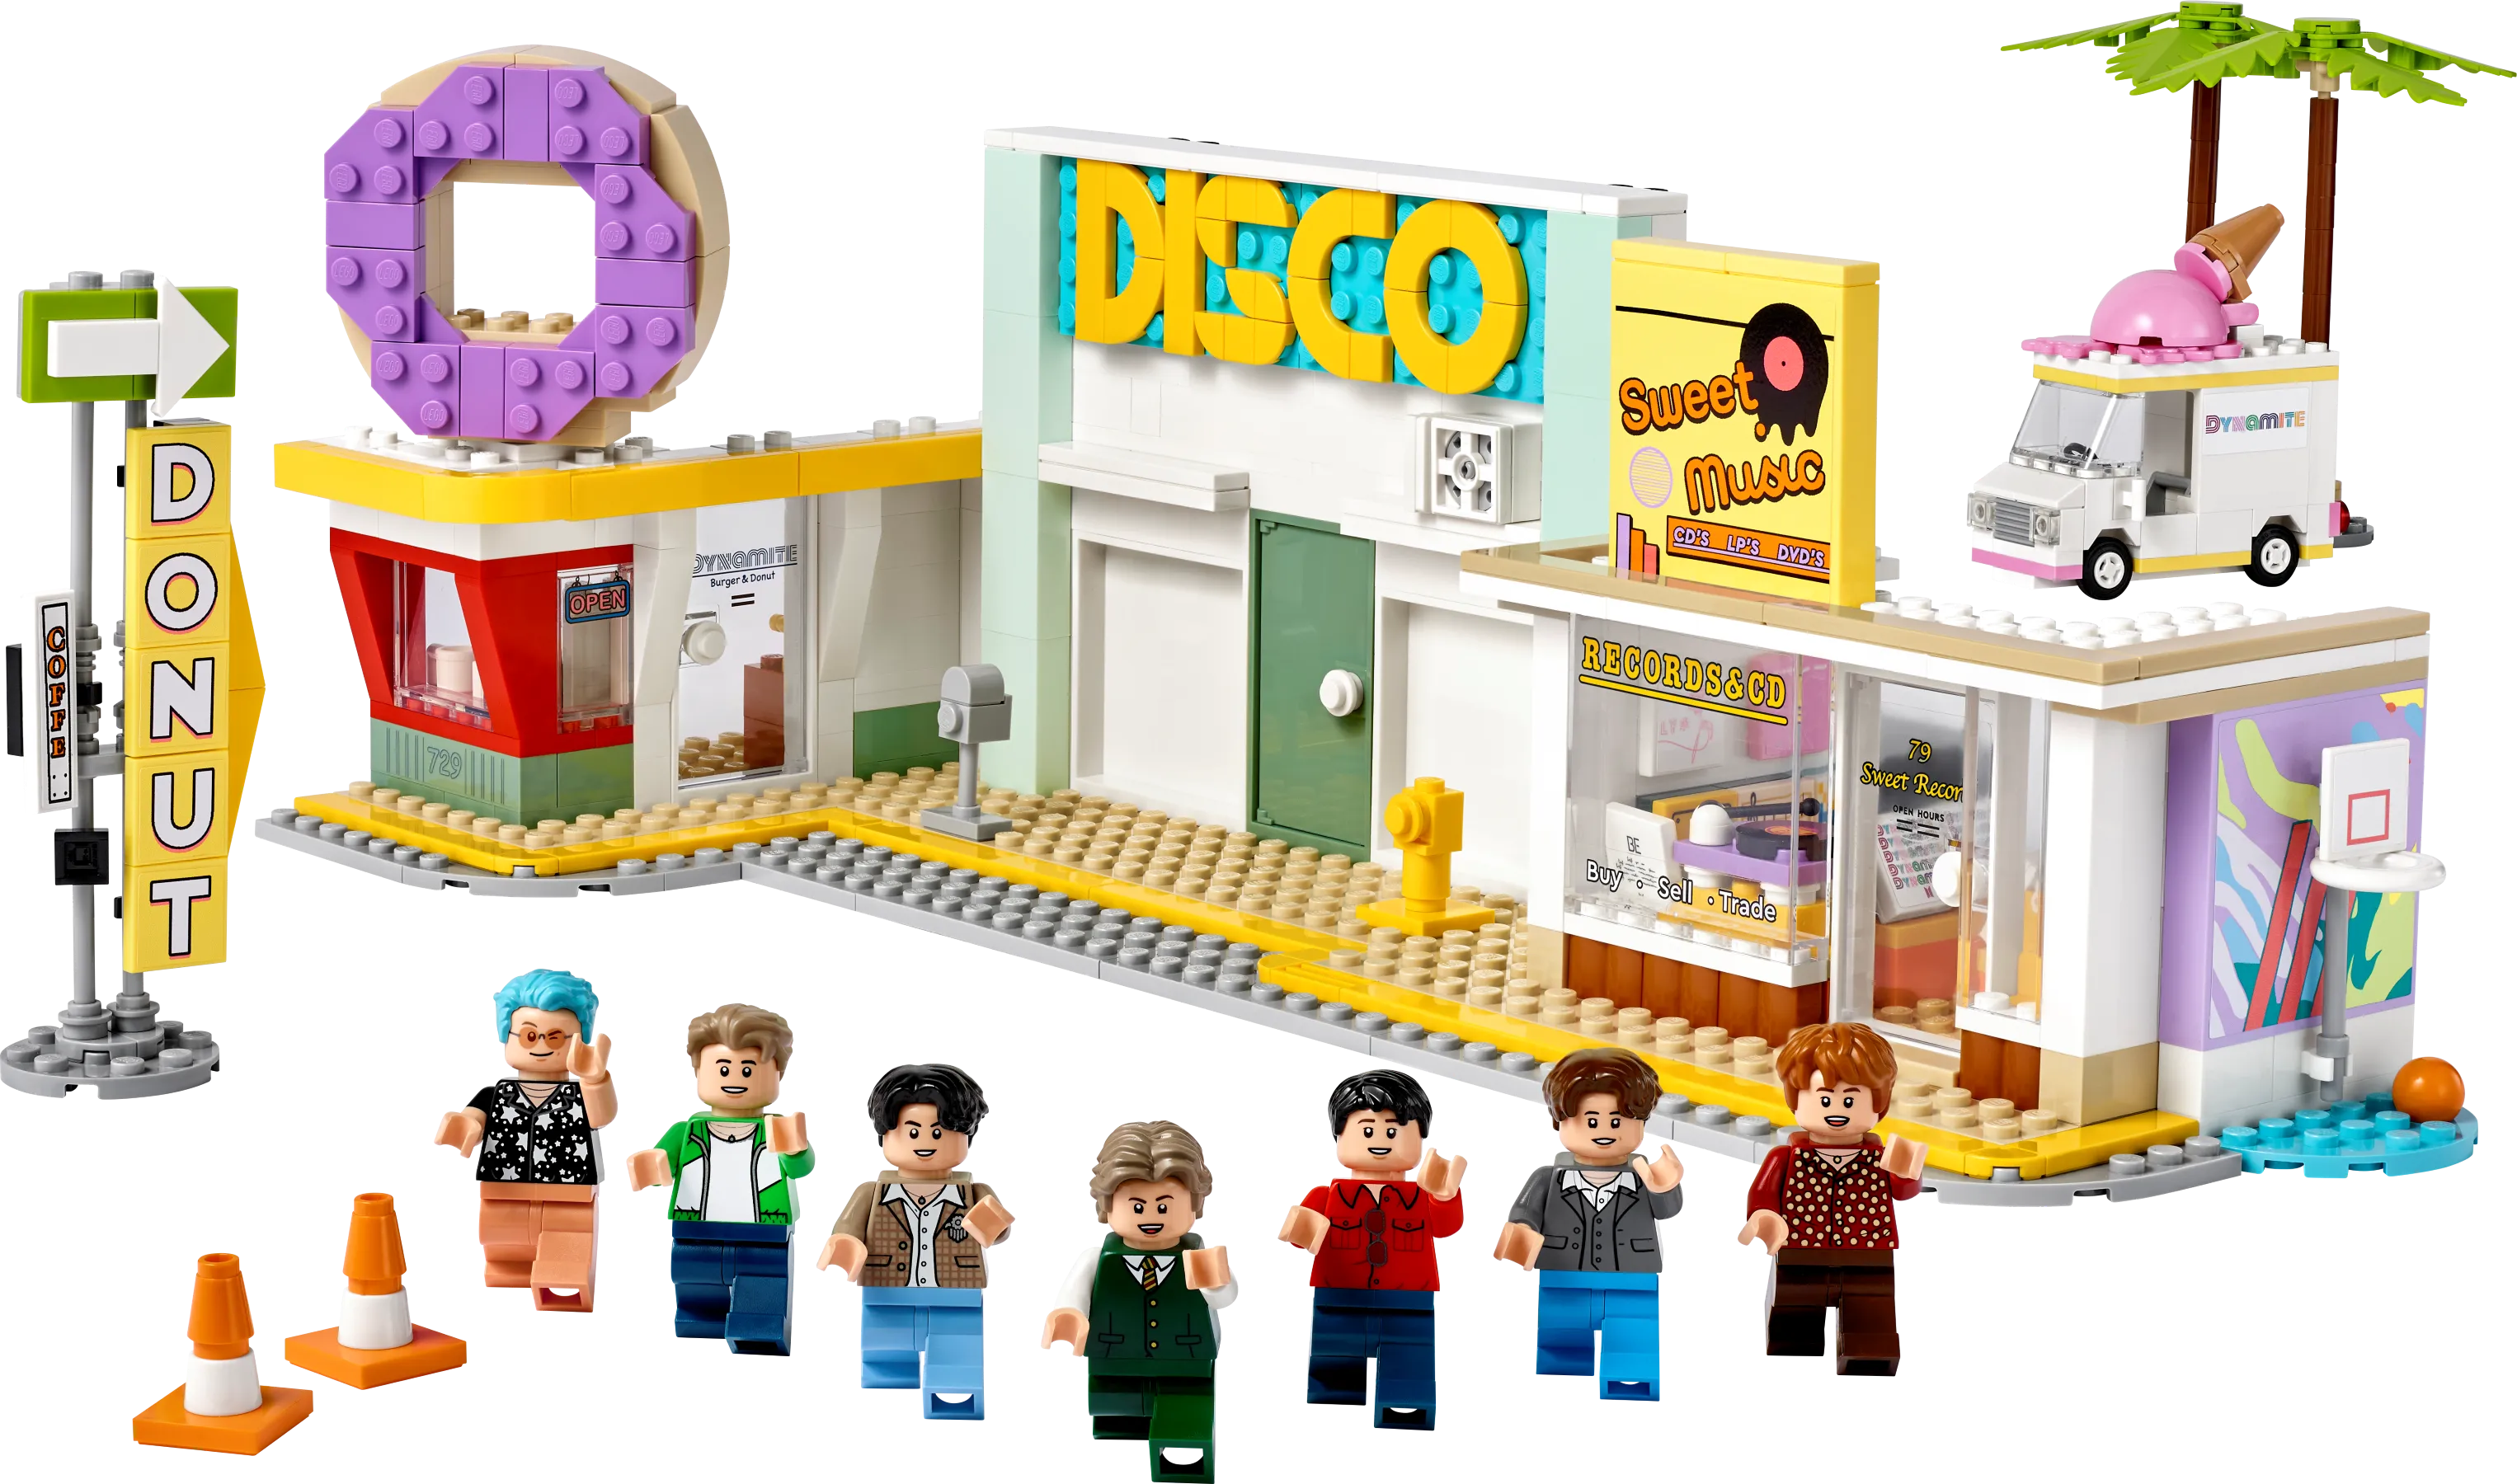 LEGO IDEAS - Roblox Truck